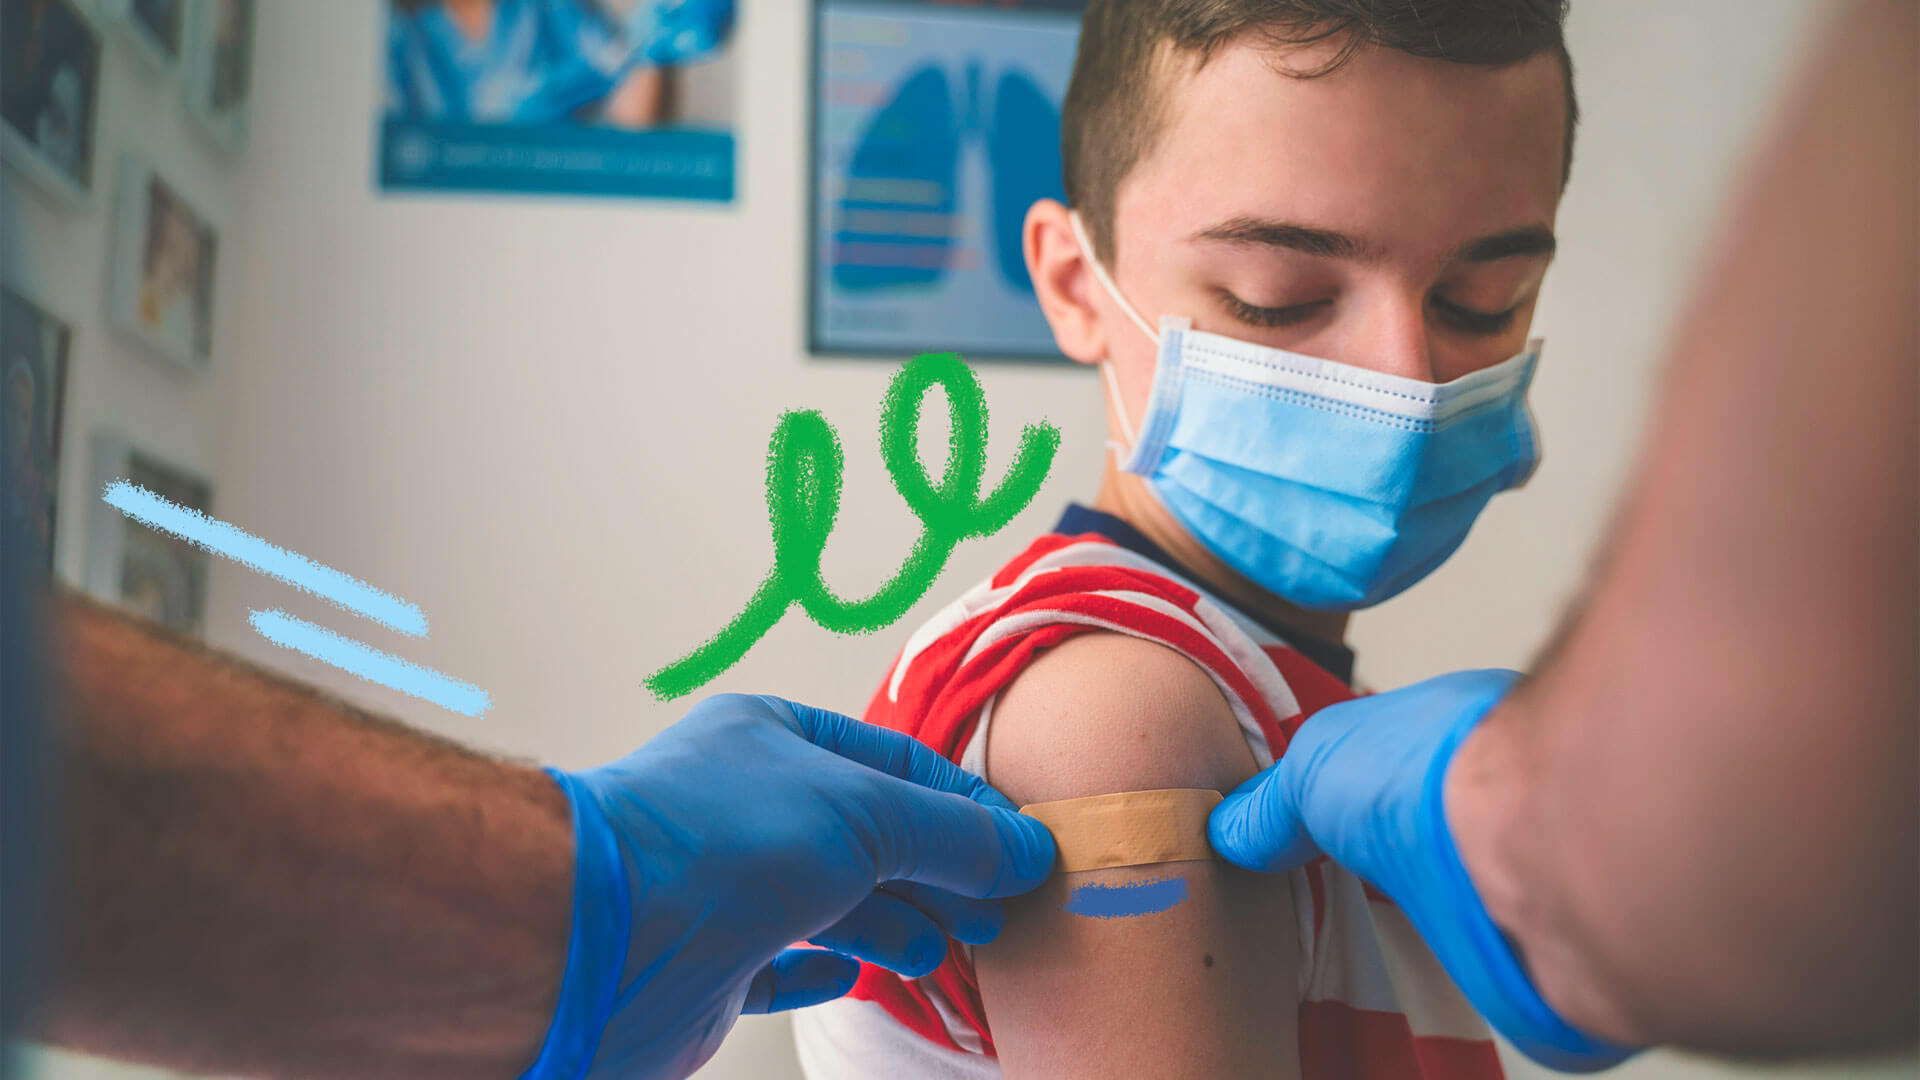 Uma criança branca e com máscara recebe um curativo no braço de duas mãos com luvas cirúrgicas azuis.